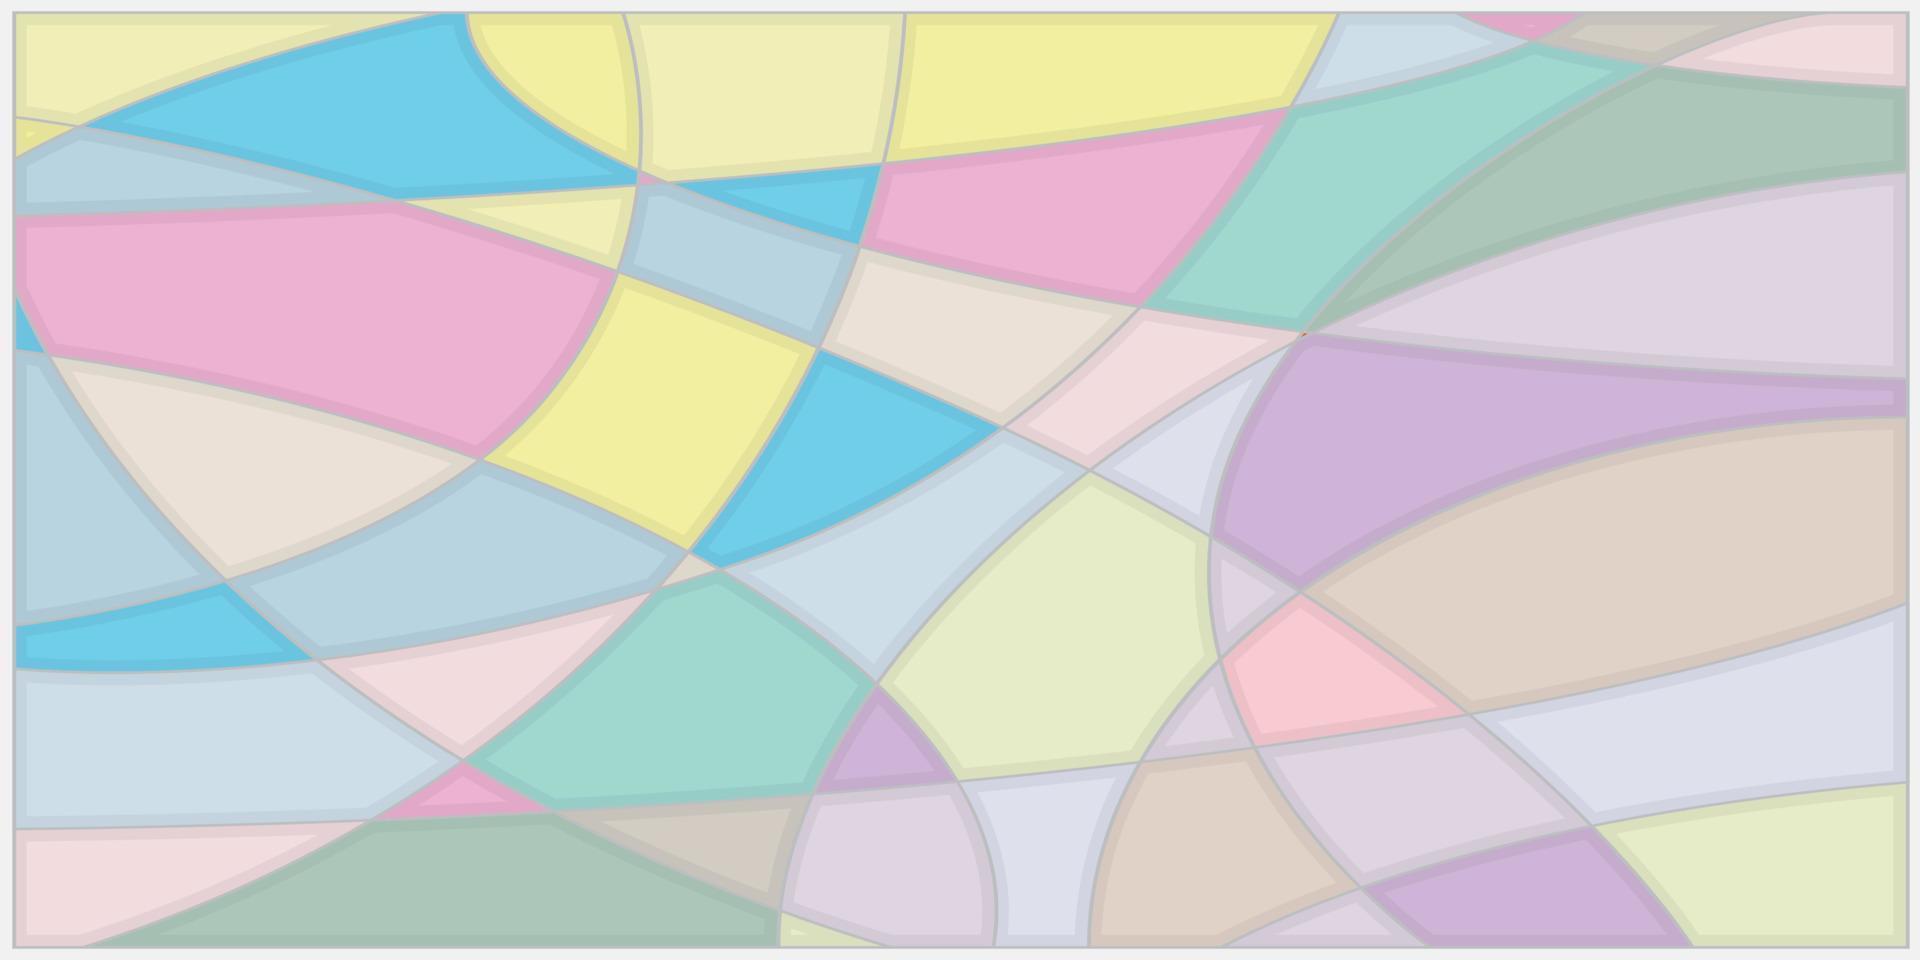 Das Hintergrundbild wird durch Schneiden von Linien gebildet, um geometrische Formen mit Pastelltönen zu erstellen. vektor